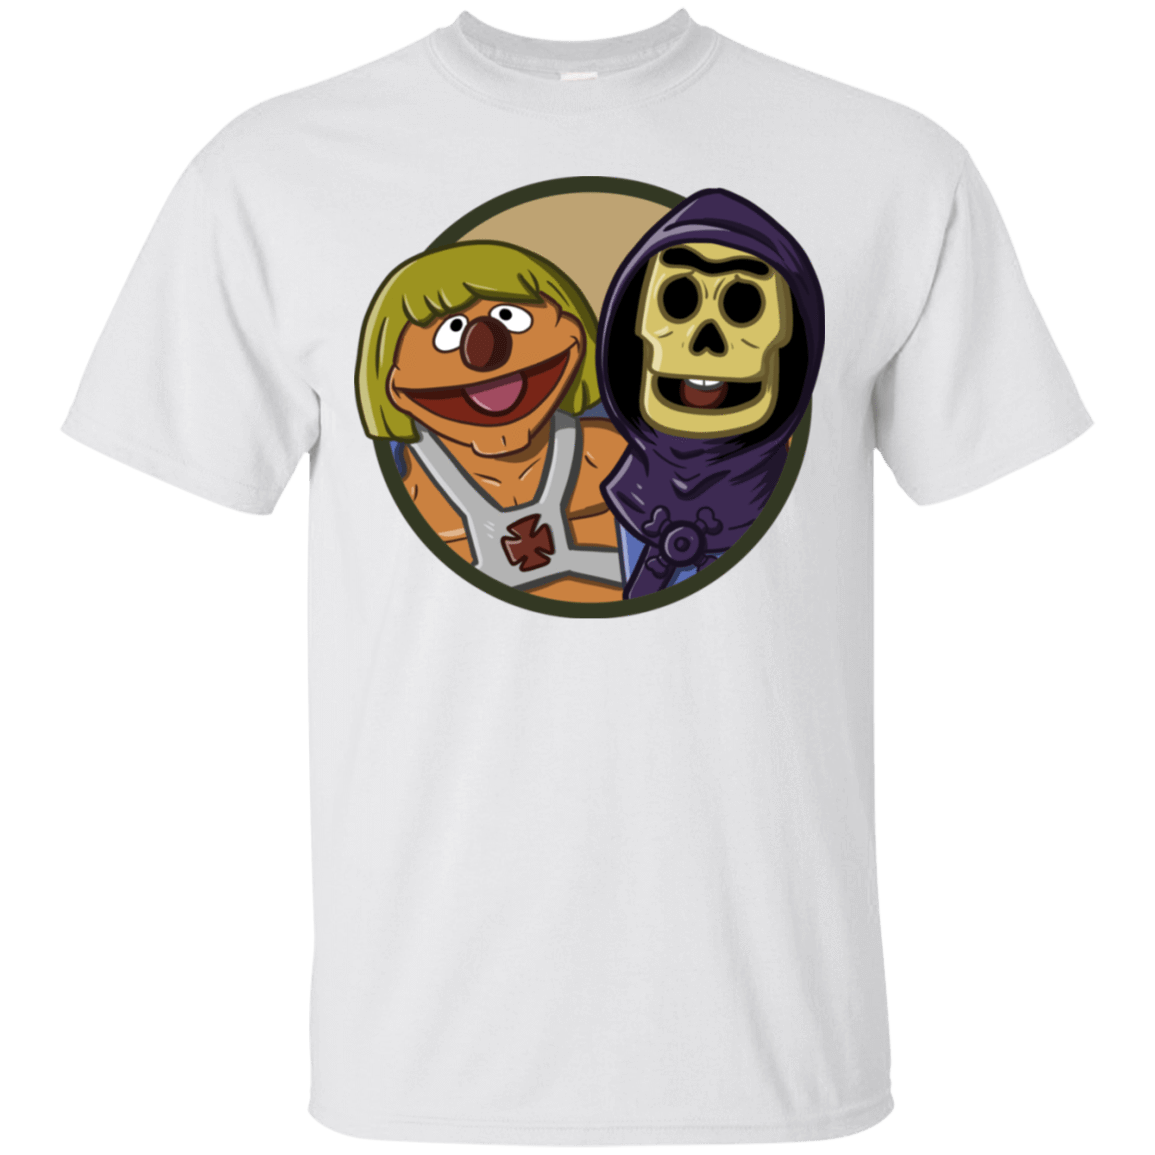 T-Shirts White / S Bert and Ernie T-Shirt